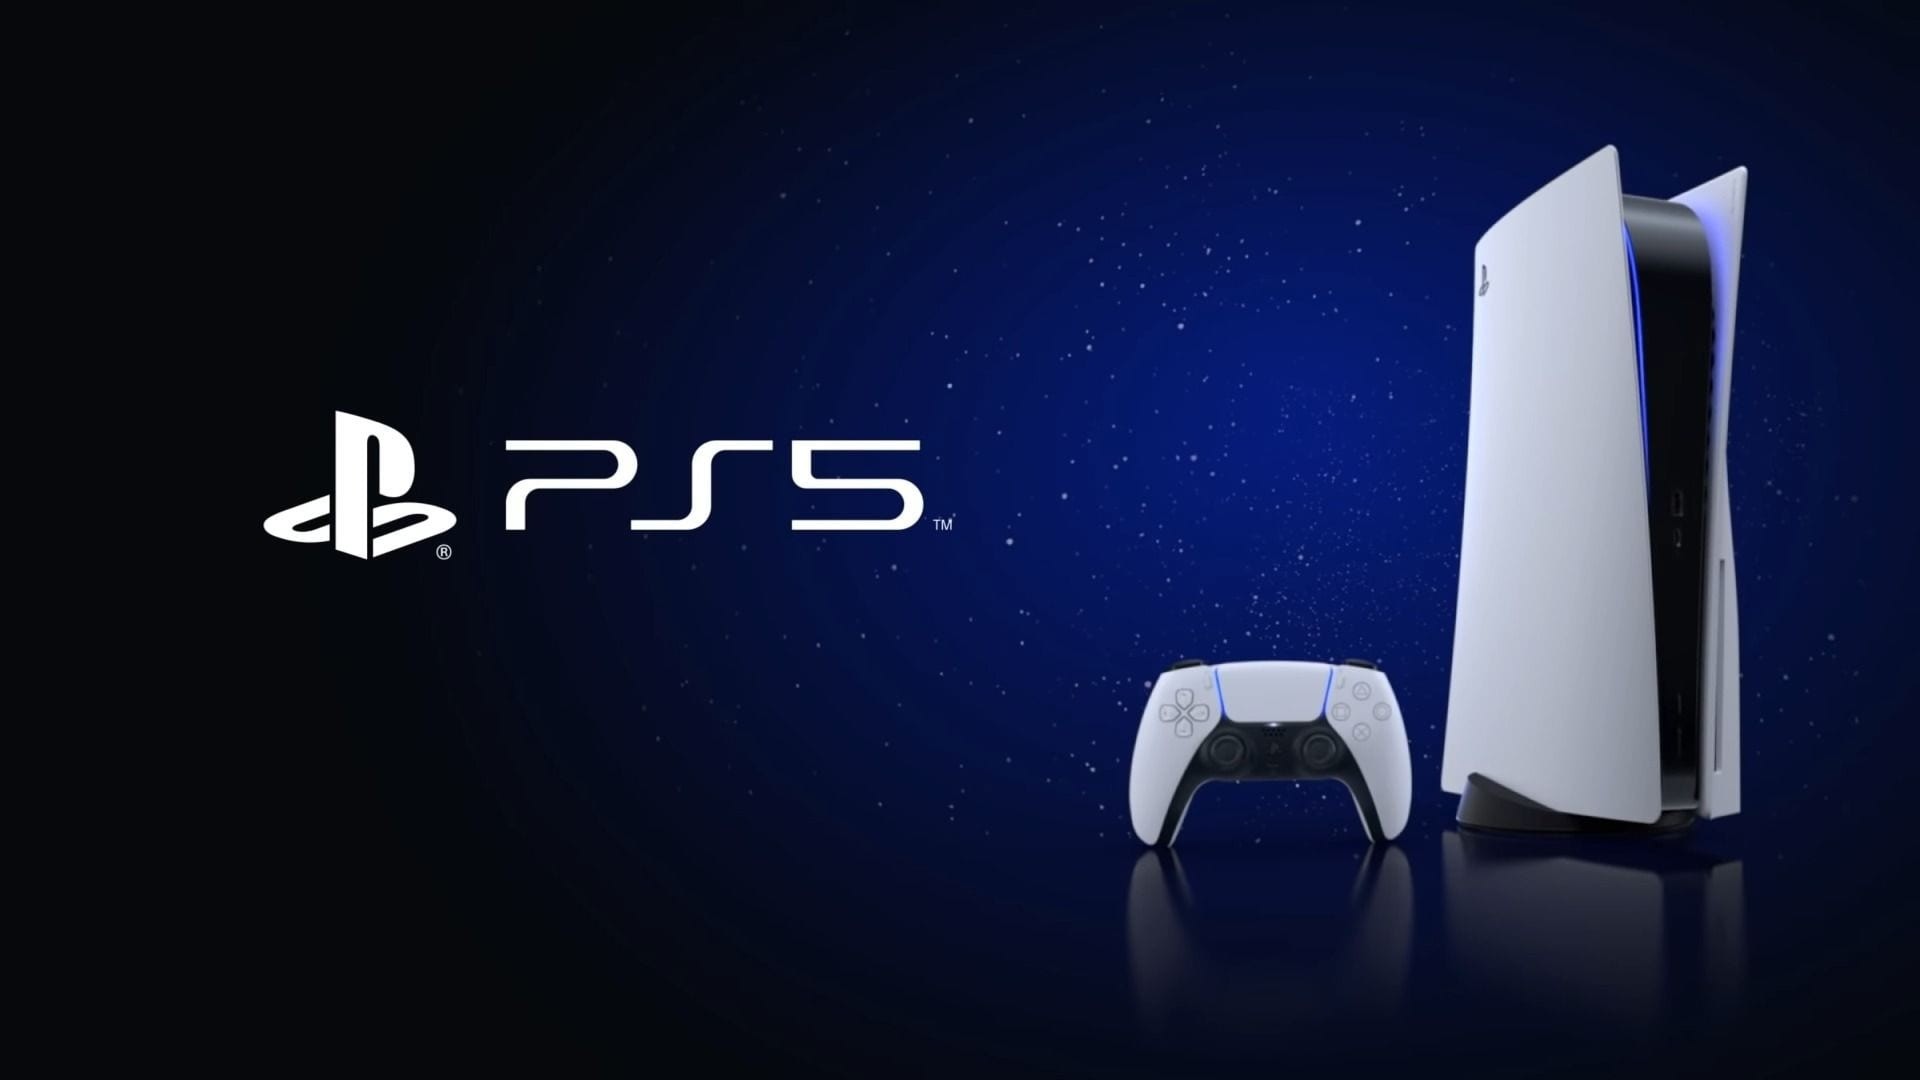 PS5 teve a sua pior semana de vendas no Japão